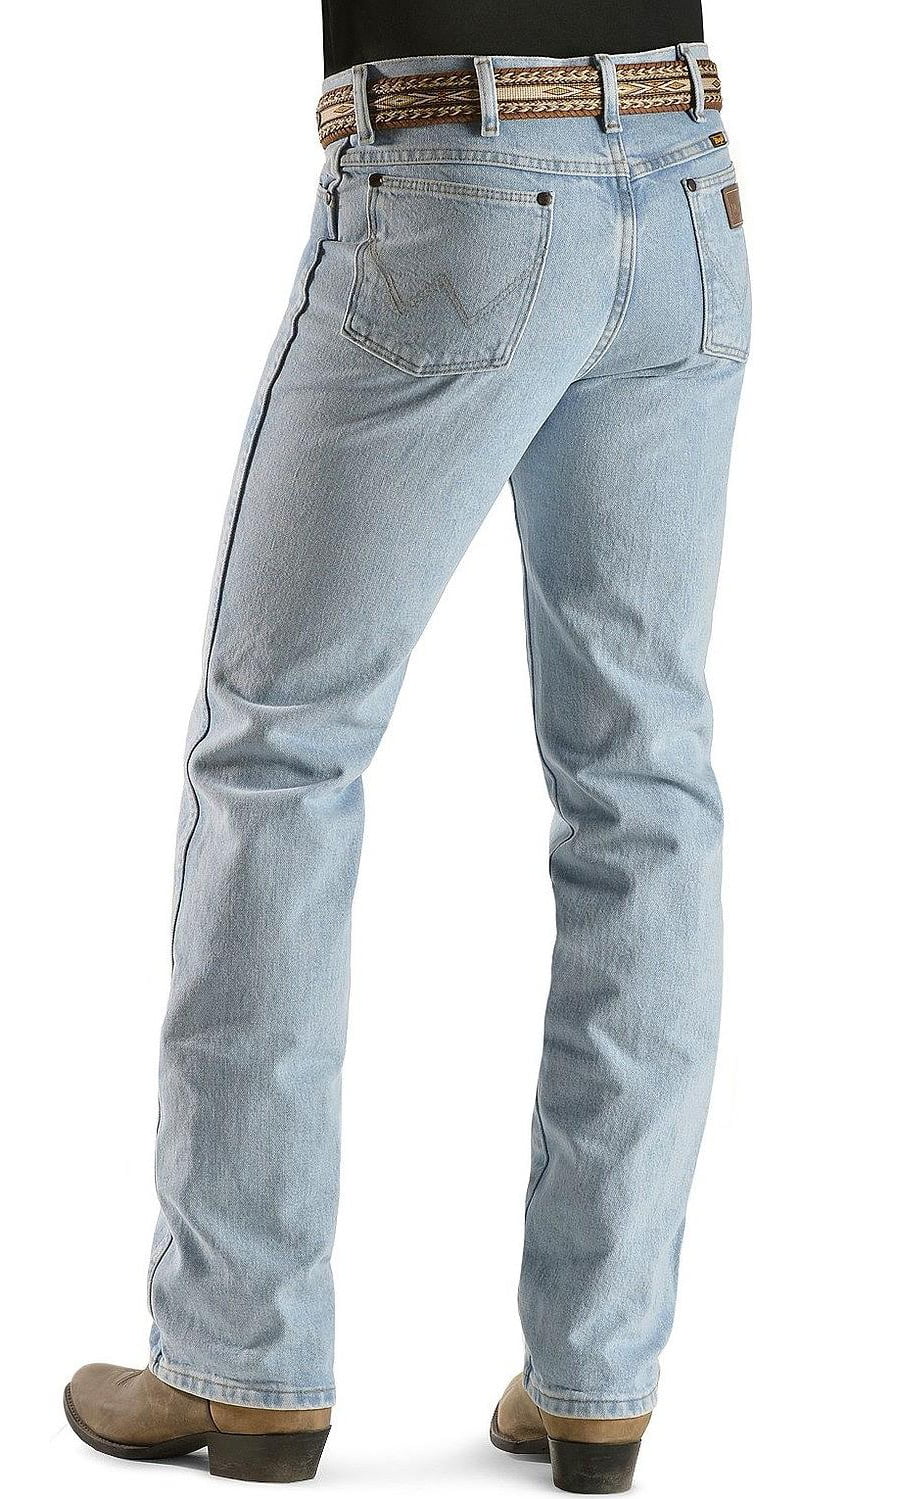 33x30 skinny jeans